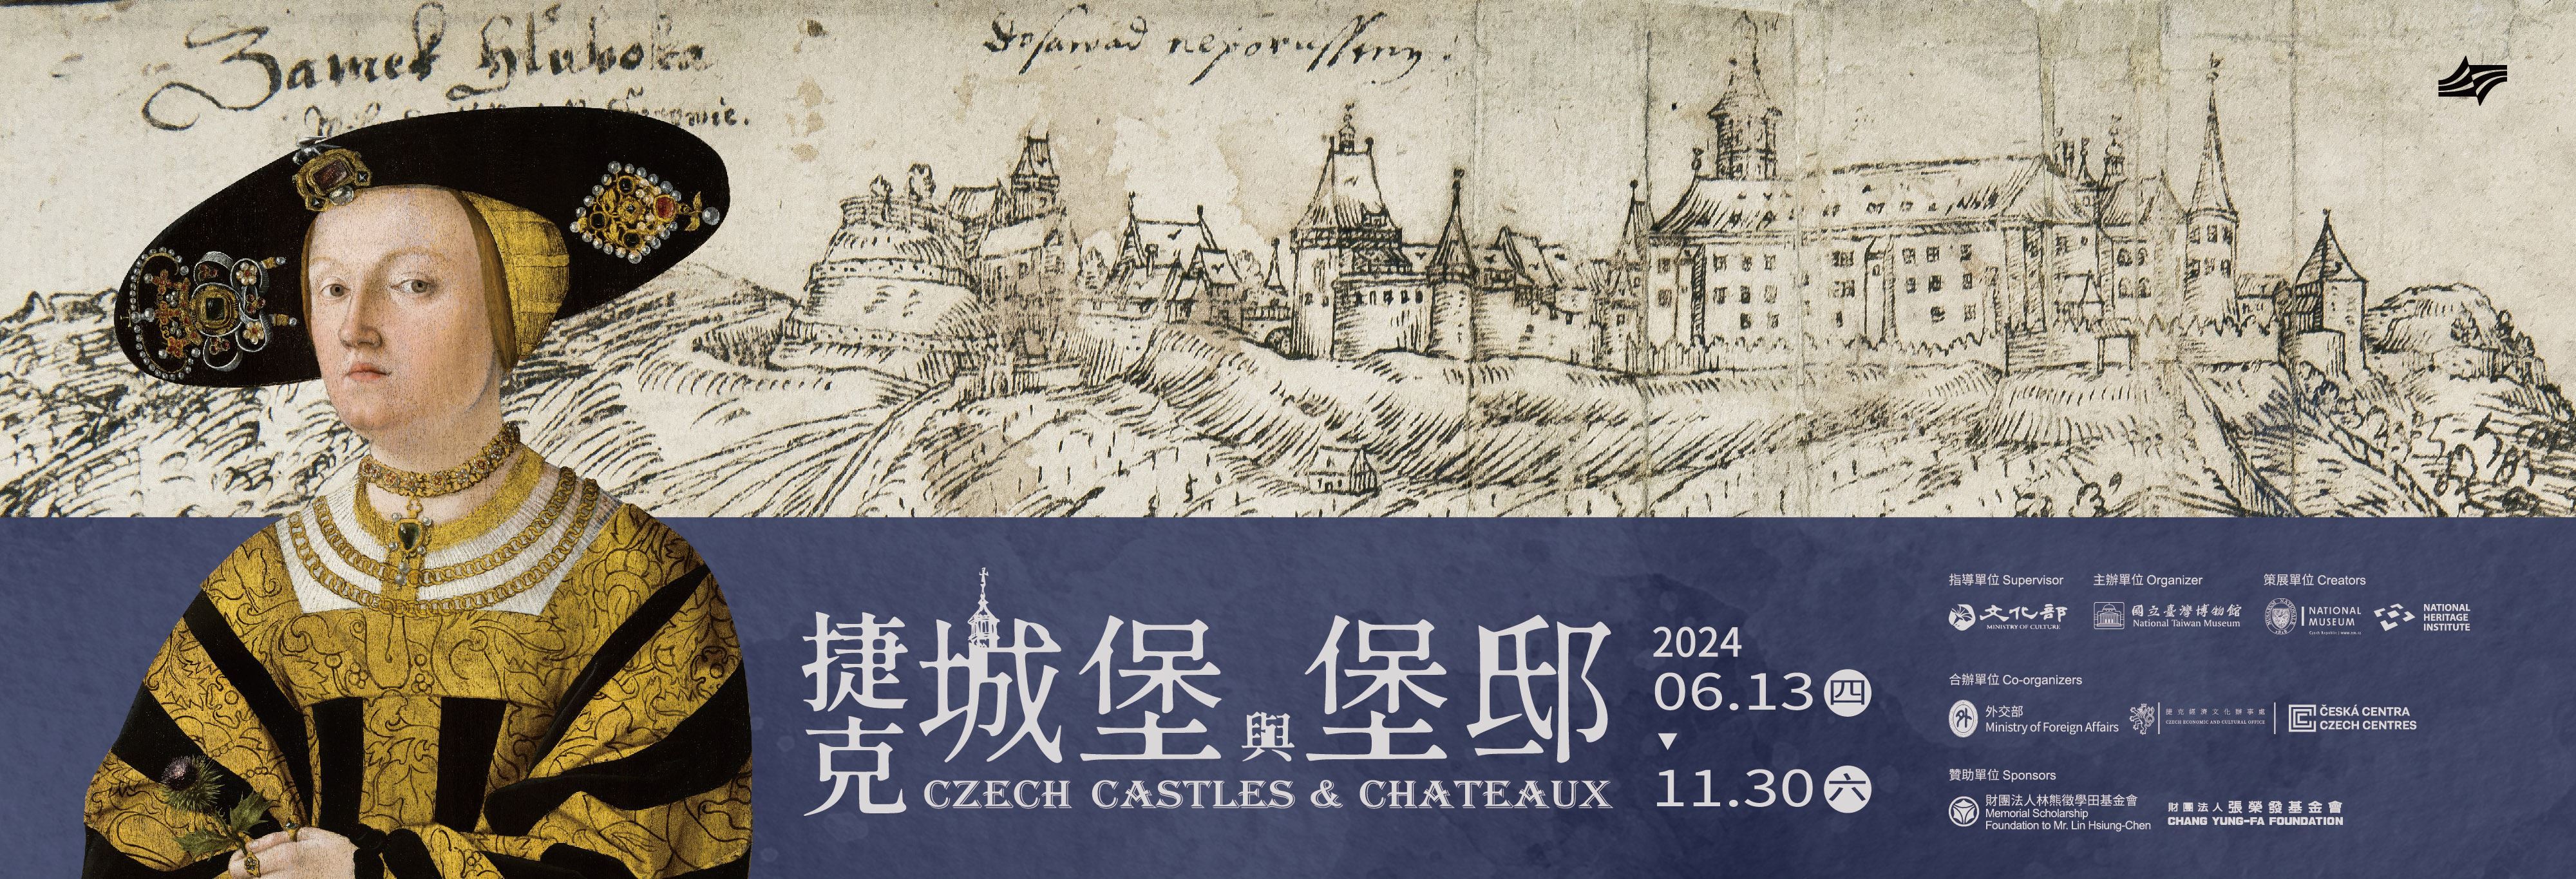 NTM hosts ‘Czech Castles & Chateaux’ exhibition until Nov. 13